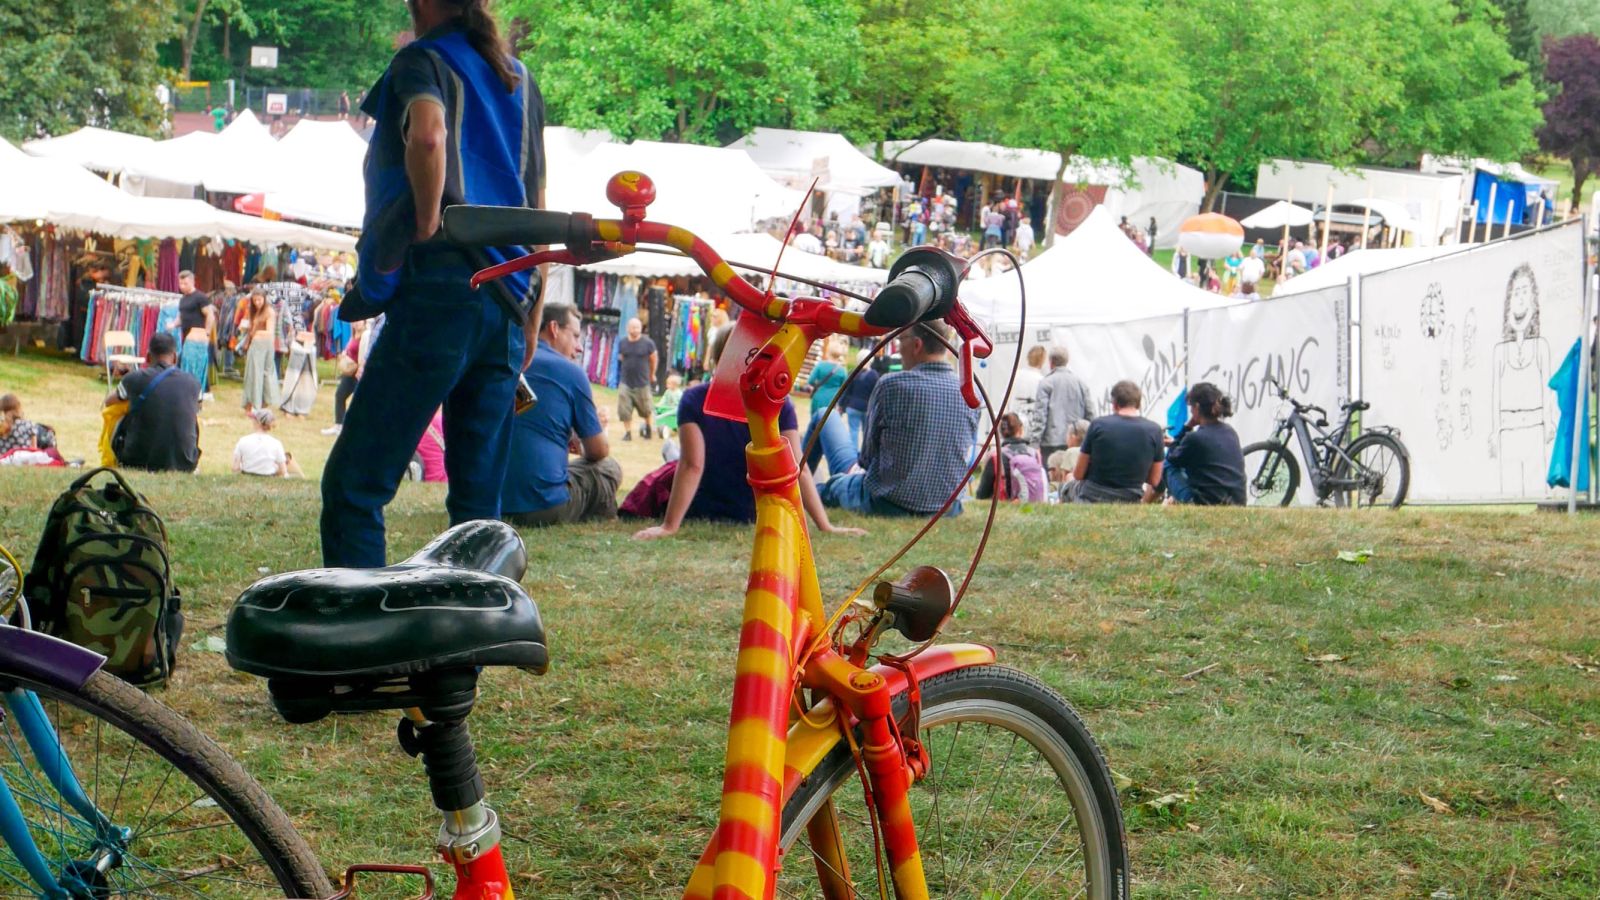 Ein buntgemaltes Fahrrad, abgestellt. Im Hintergrund ist reges Treiben auf dem Festivaldorf zu sehen.